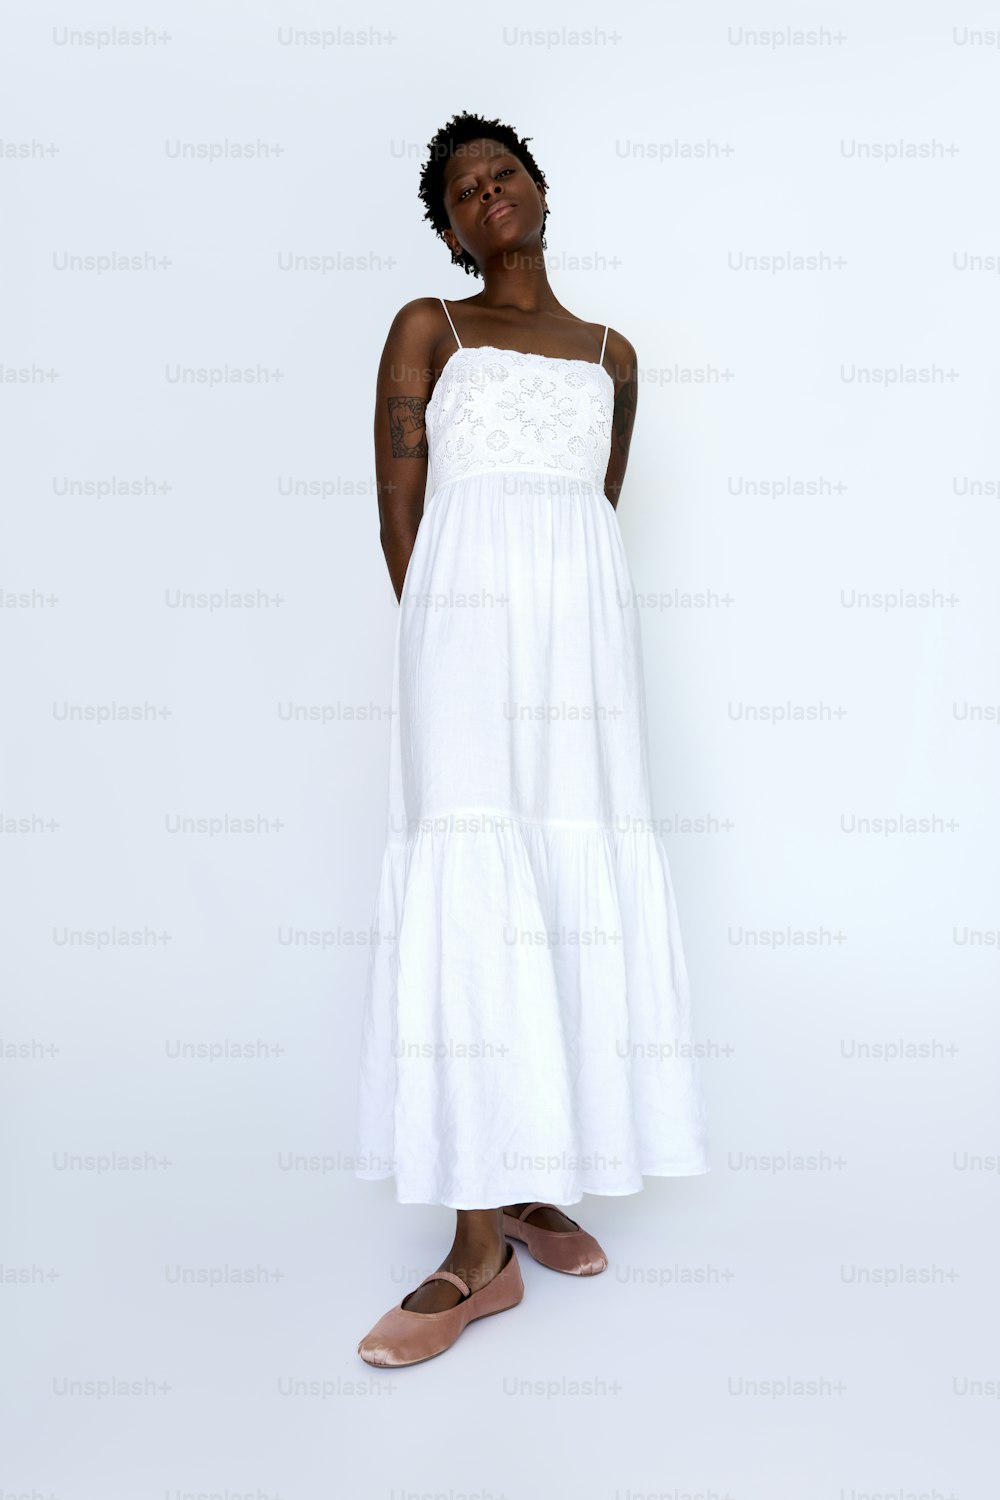 Una mujer de pie con un vestido blanco